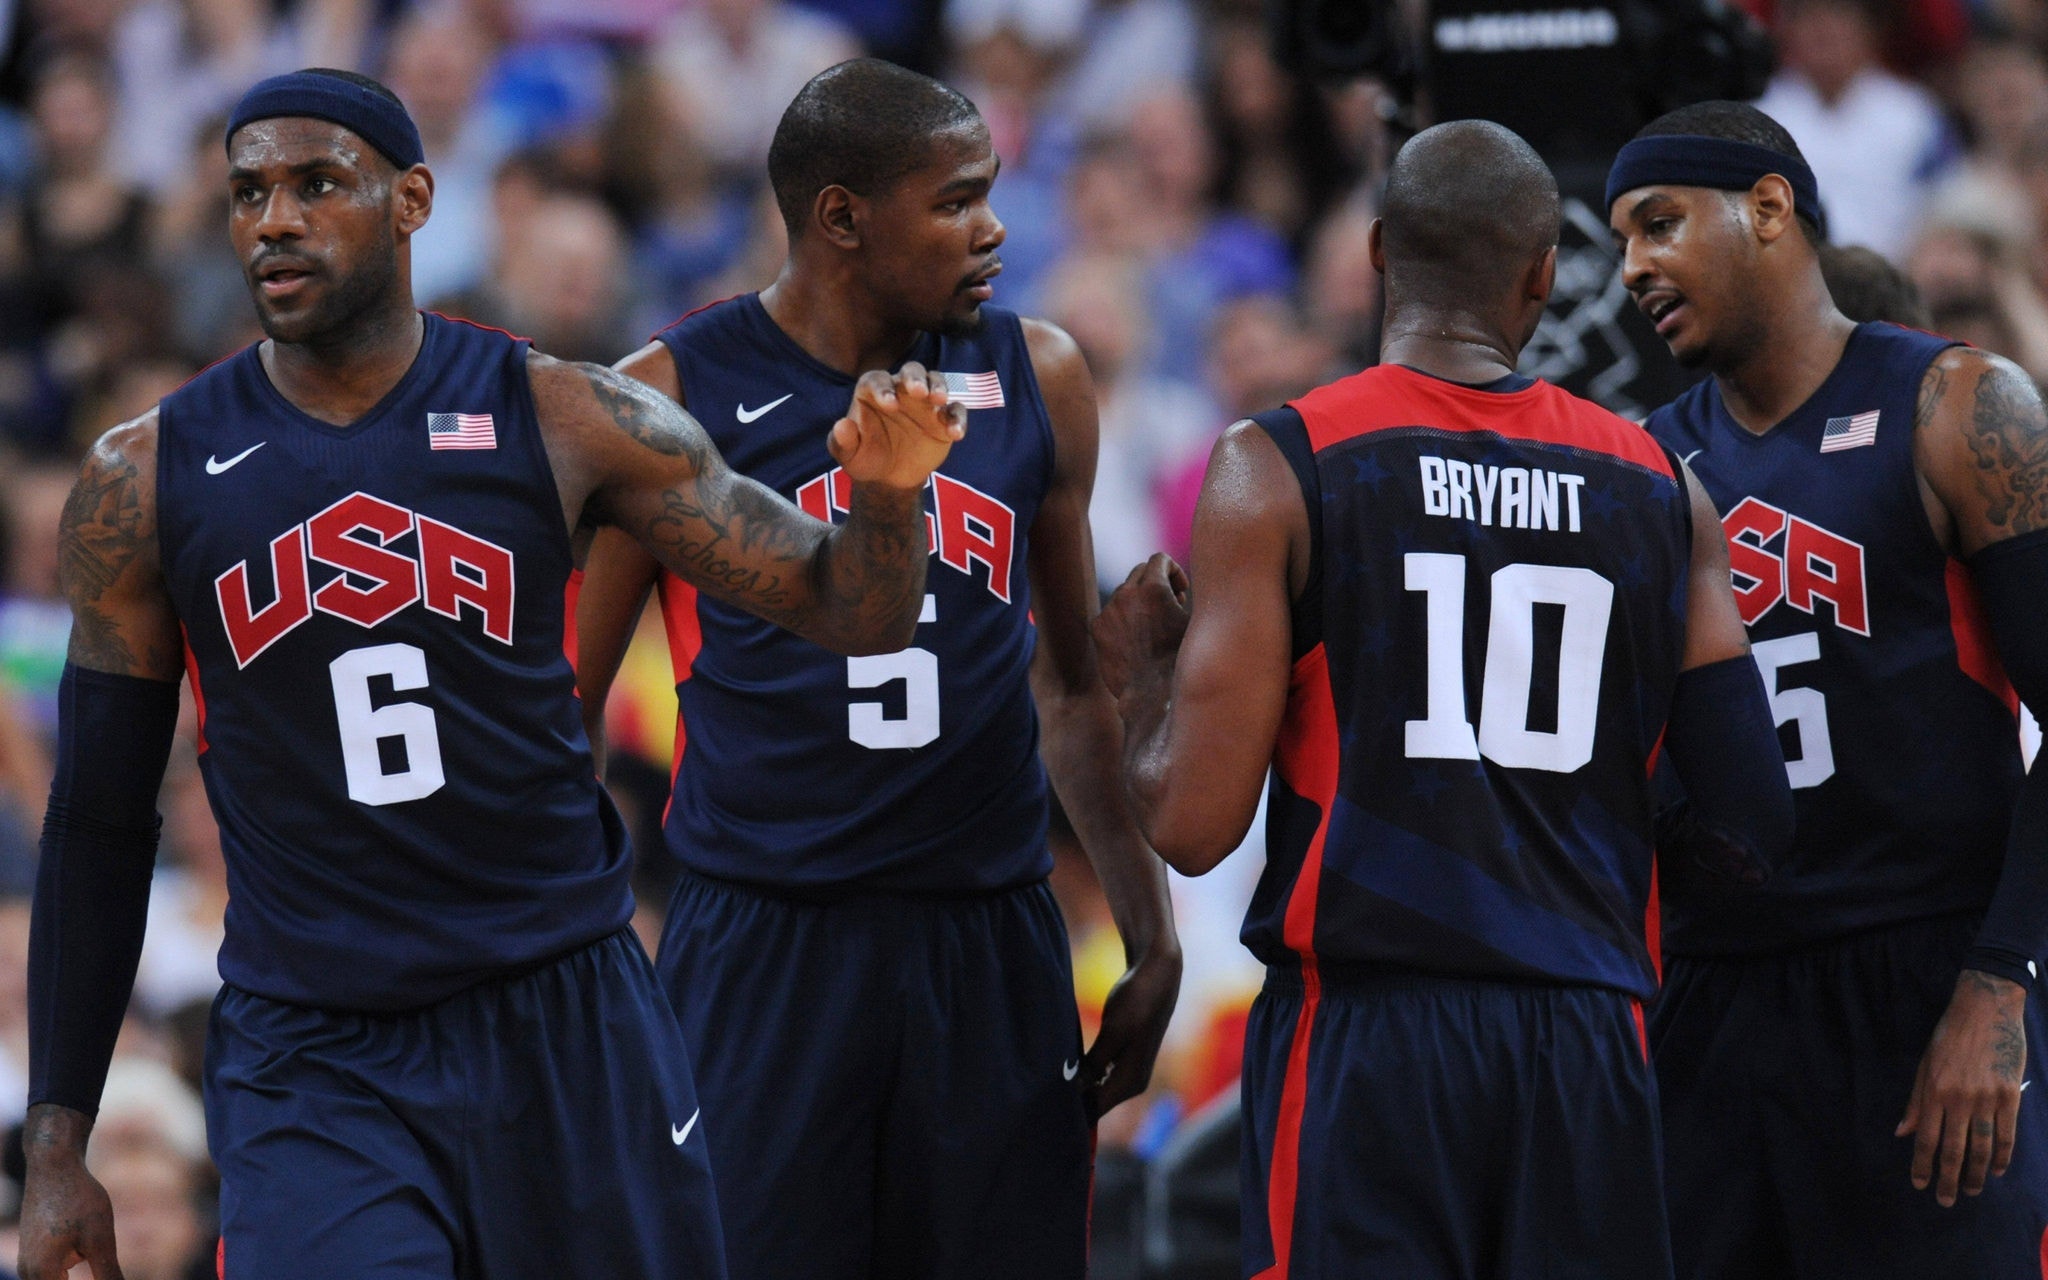 Sorteio coloca EUA no mesmo grupo da Sérvia no basquete masculino nas Olimpíadas de Paris-2024